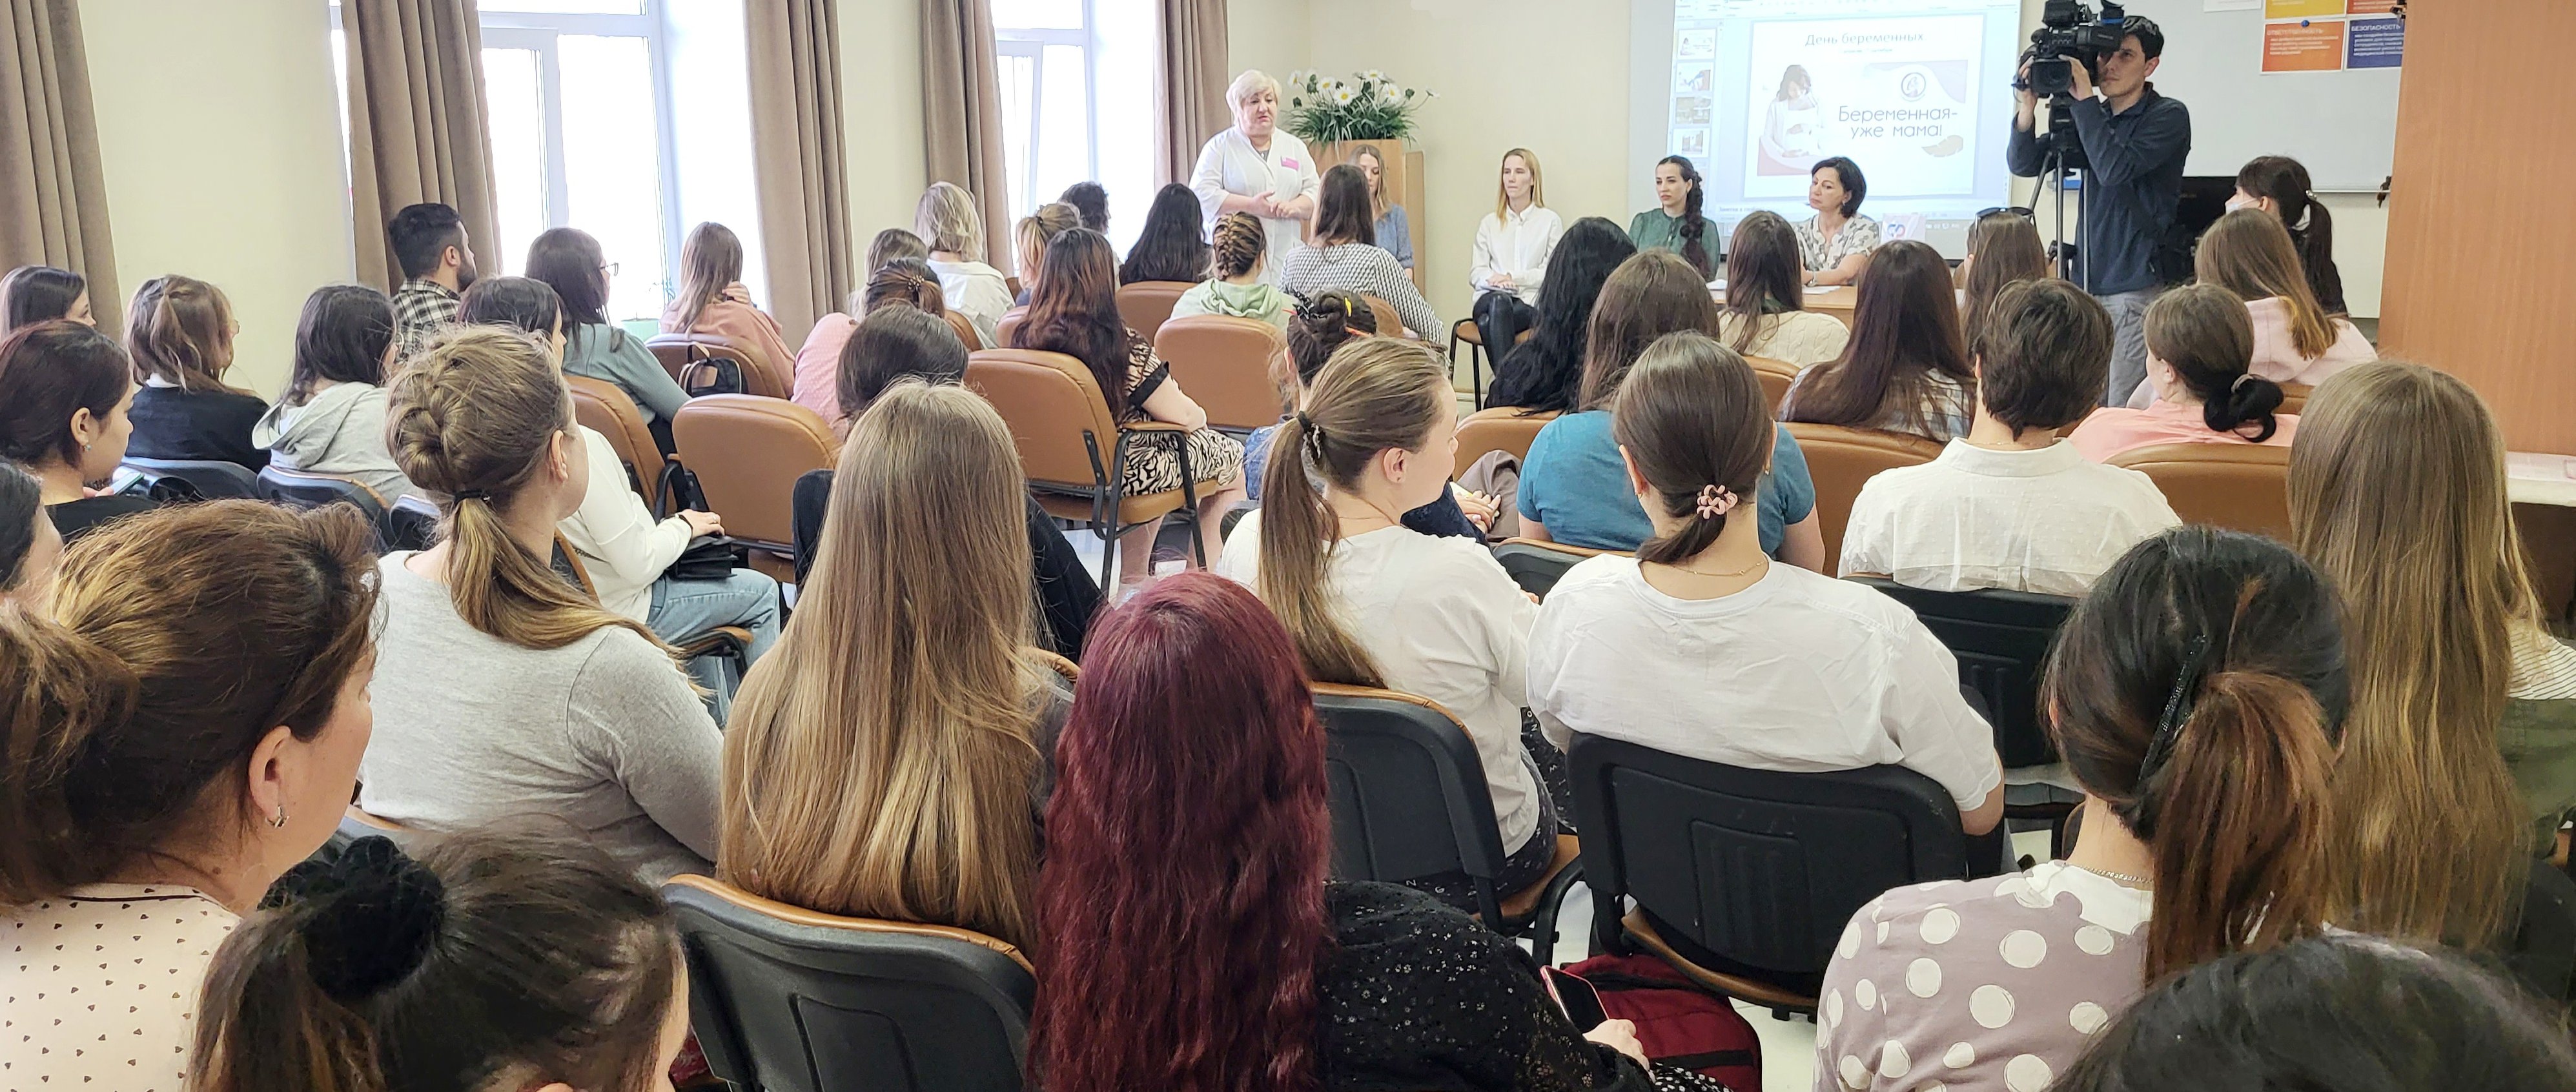 В День беременных сотрудники Отделения СФР по Приморскому краю провели семинар для будущих мам.